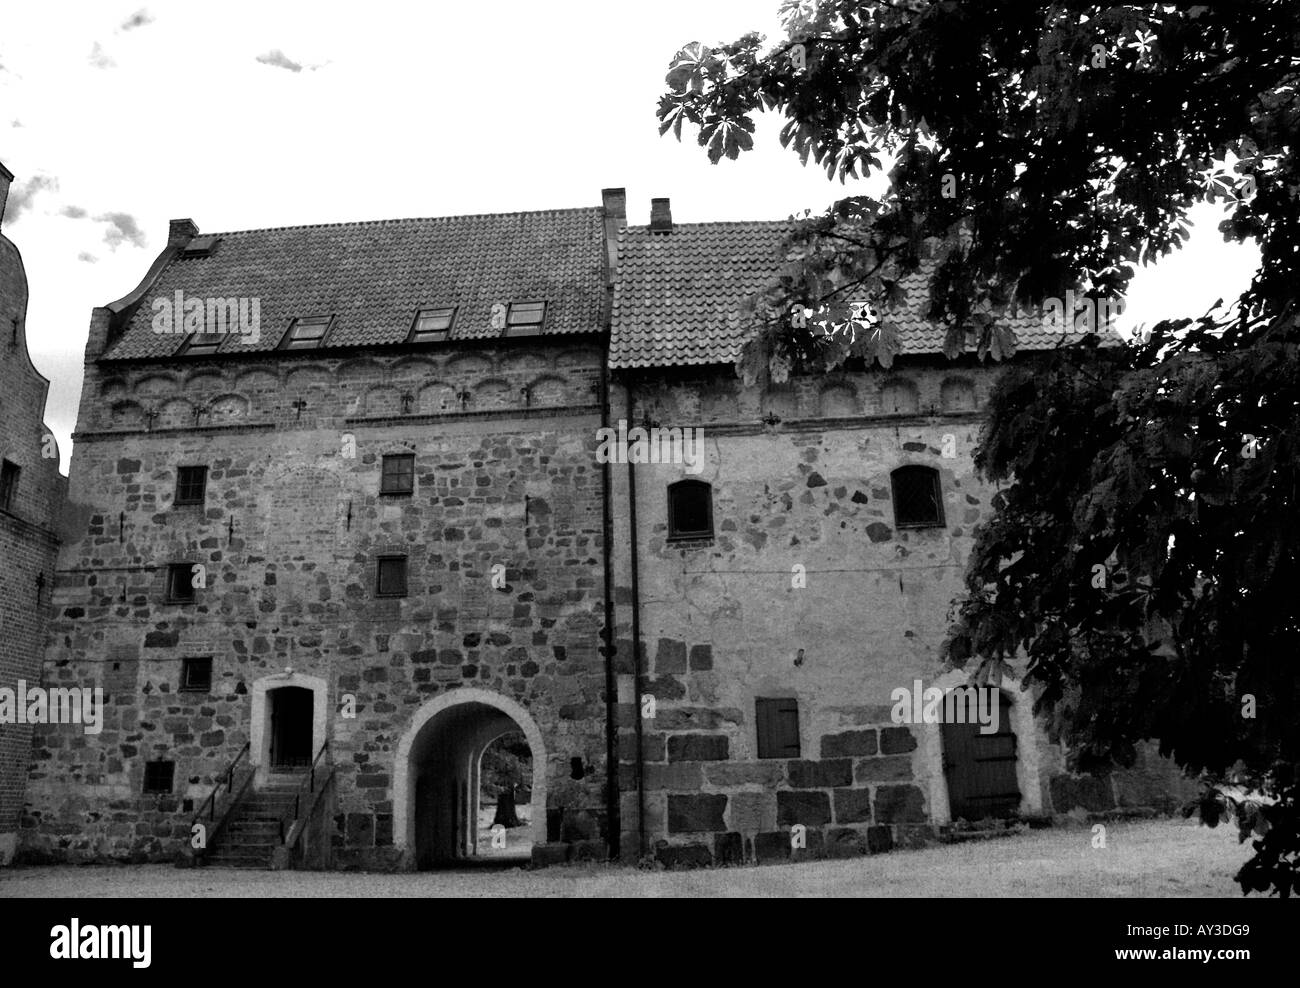 Borgeby castle Stock Photo